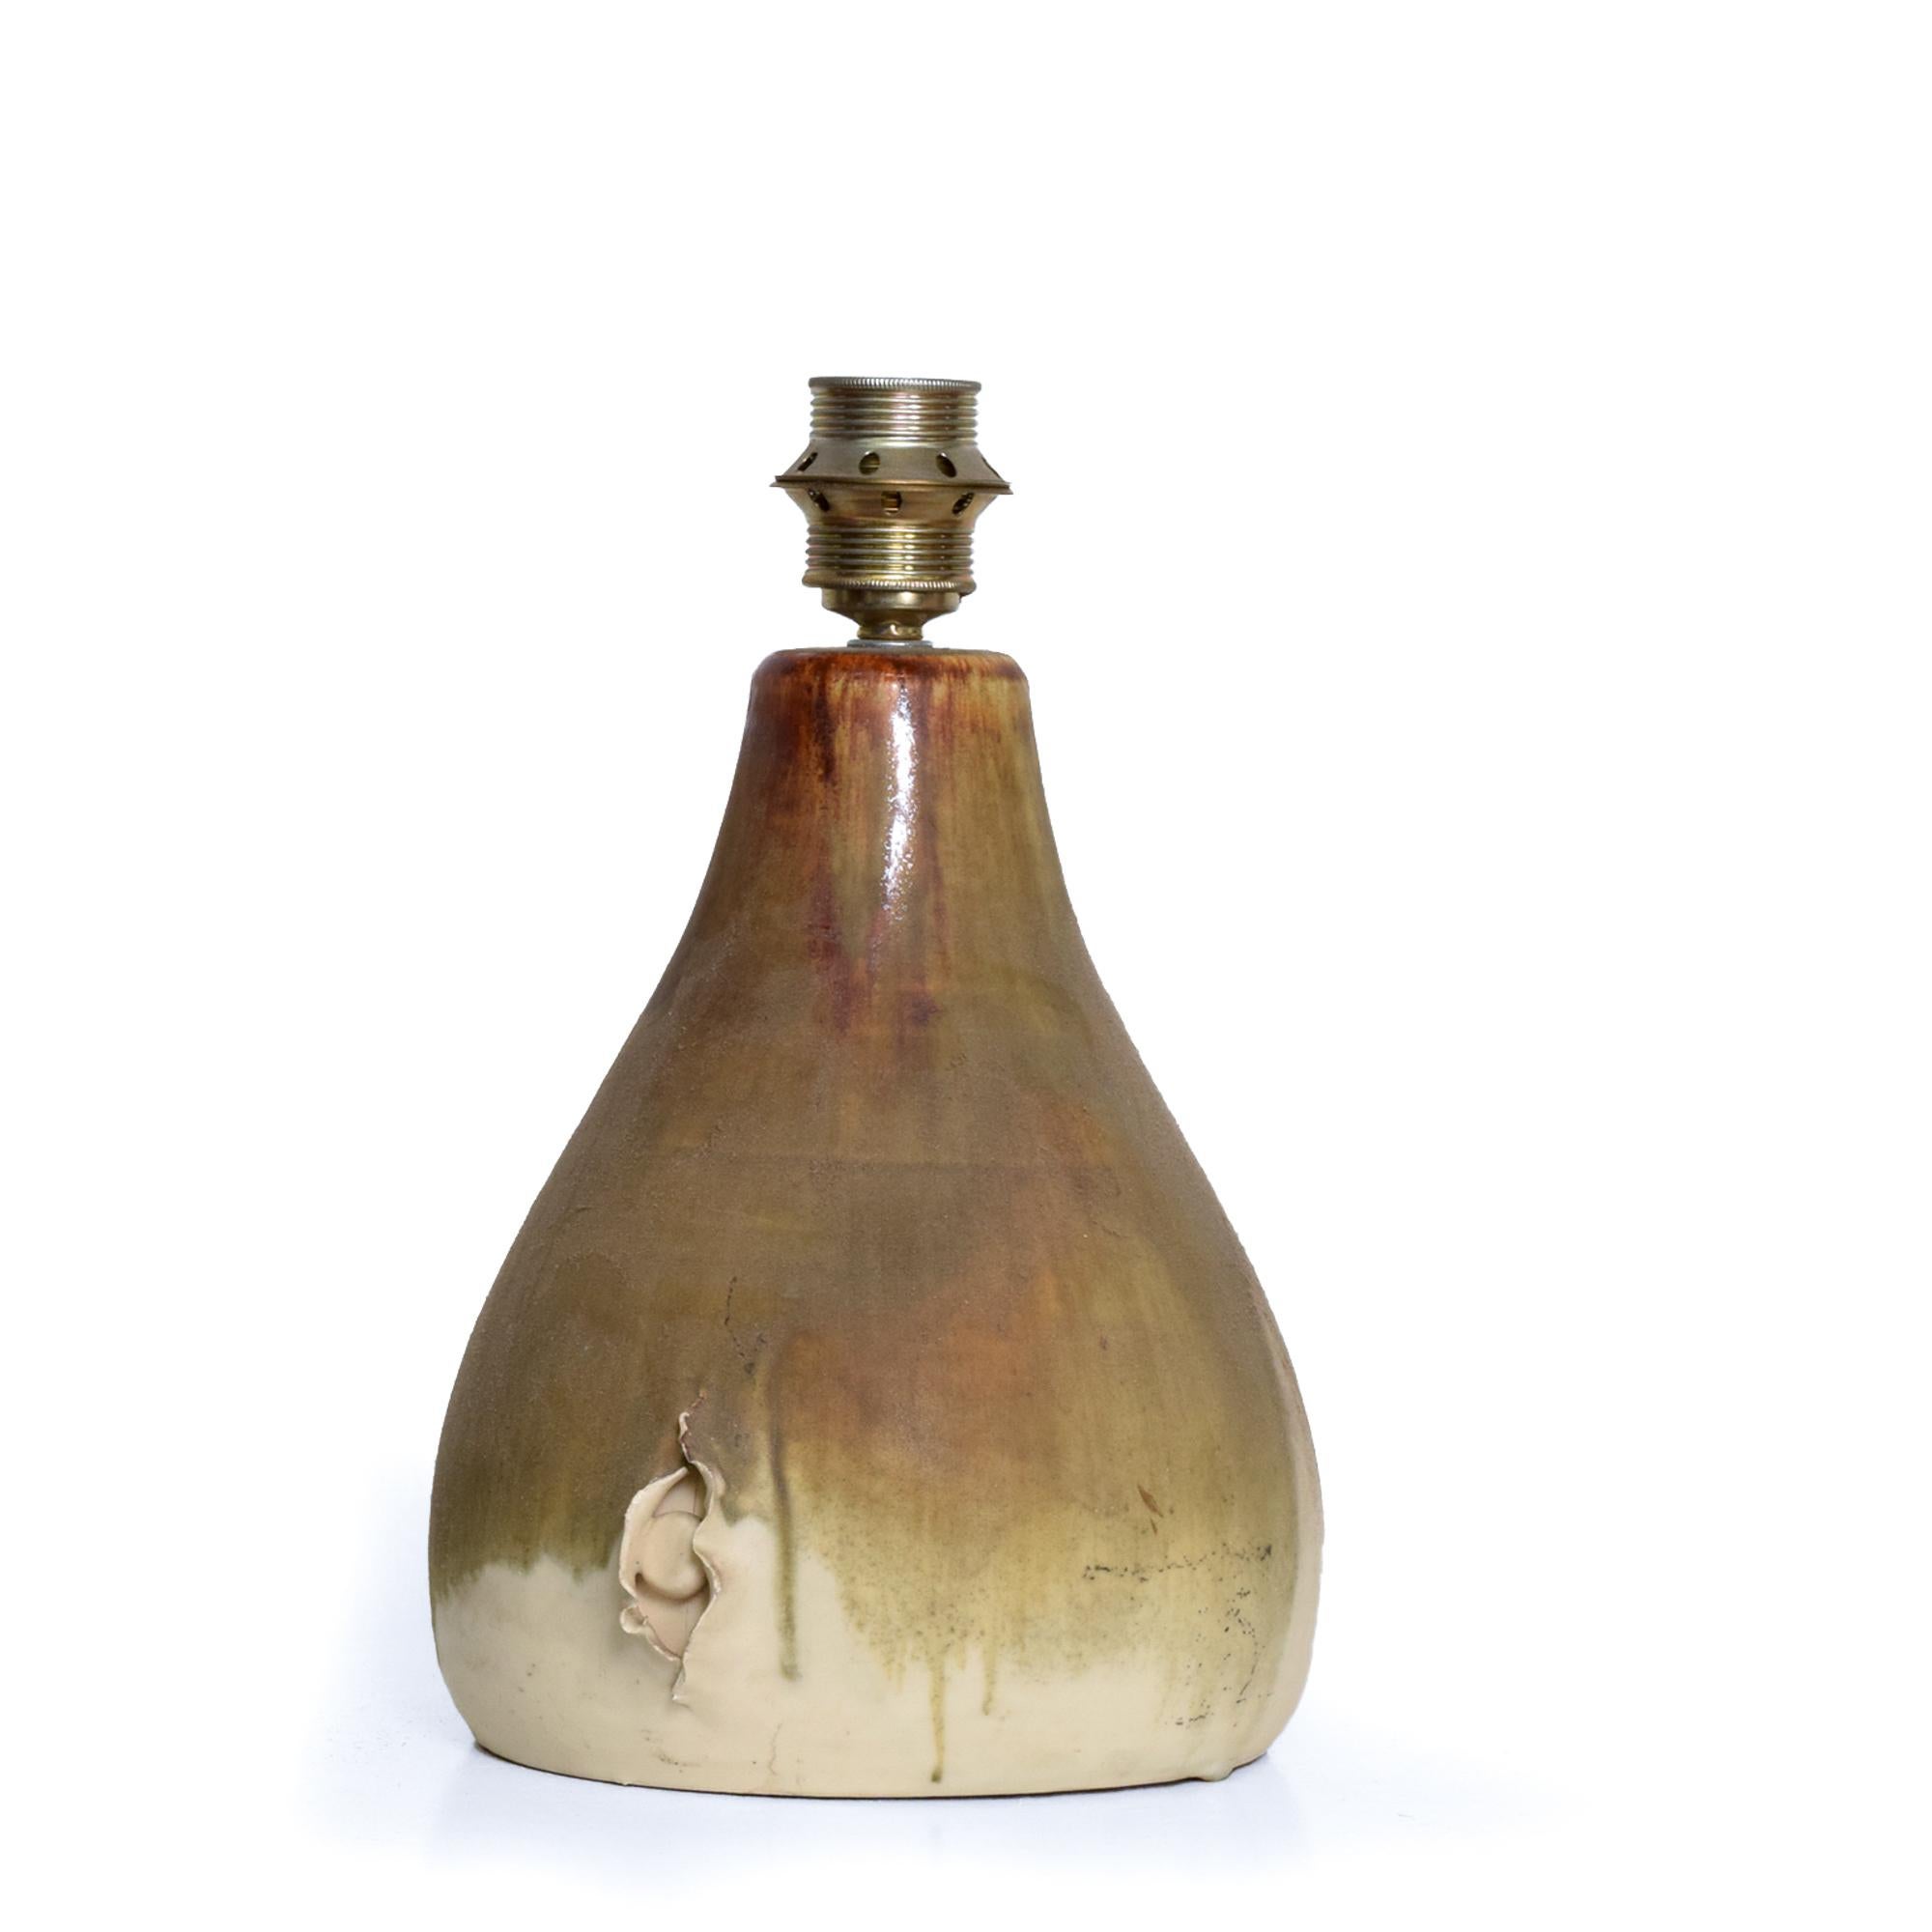 AMBIANIC présente
Lampe de table en poterie moderne scandinave Fat Lava Céramique glaçure goutte à goutte du Danemark 1960s
Style de Raymor européen
La lampe dispose d'une prise européenne pour s'adapter à l'abat-jour.
Dimensions : 13 H (douille) x